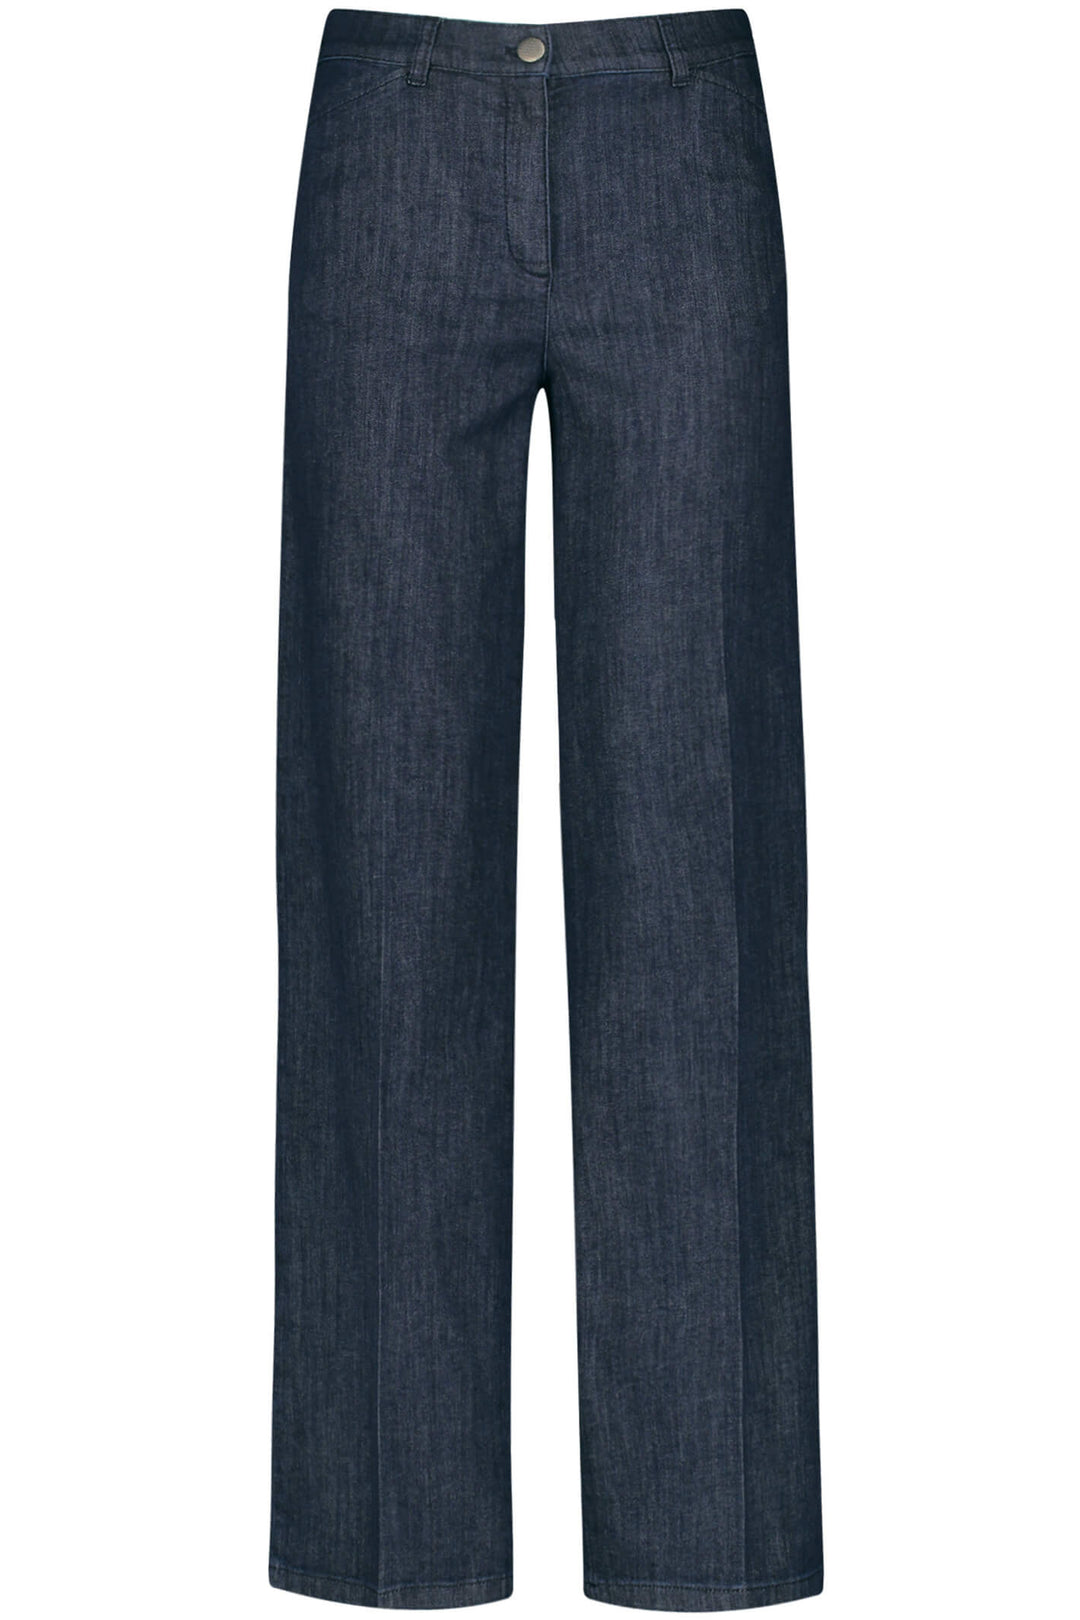 Gerry Weber 120011 Denim Blue Wide Leg Jeans - Experience Boutique